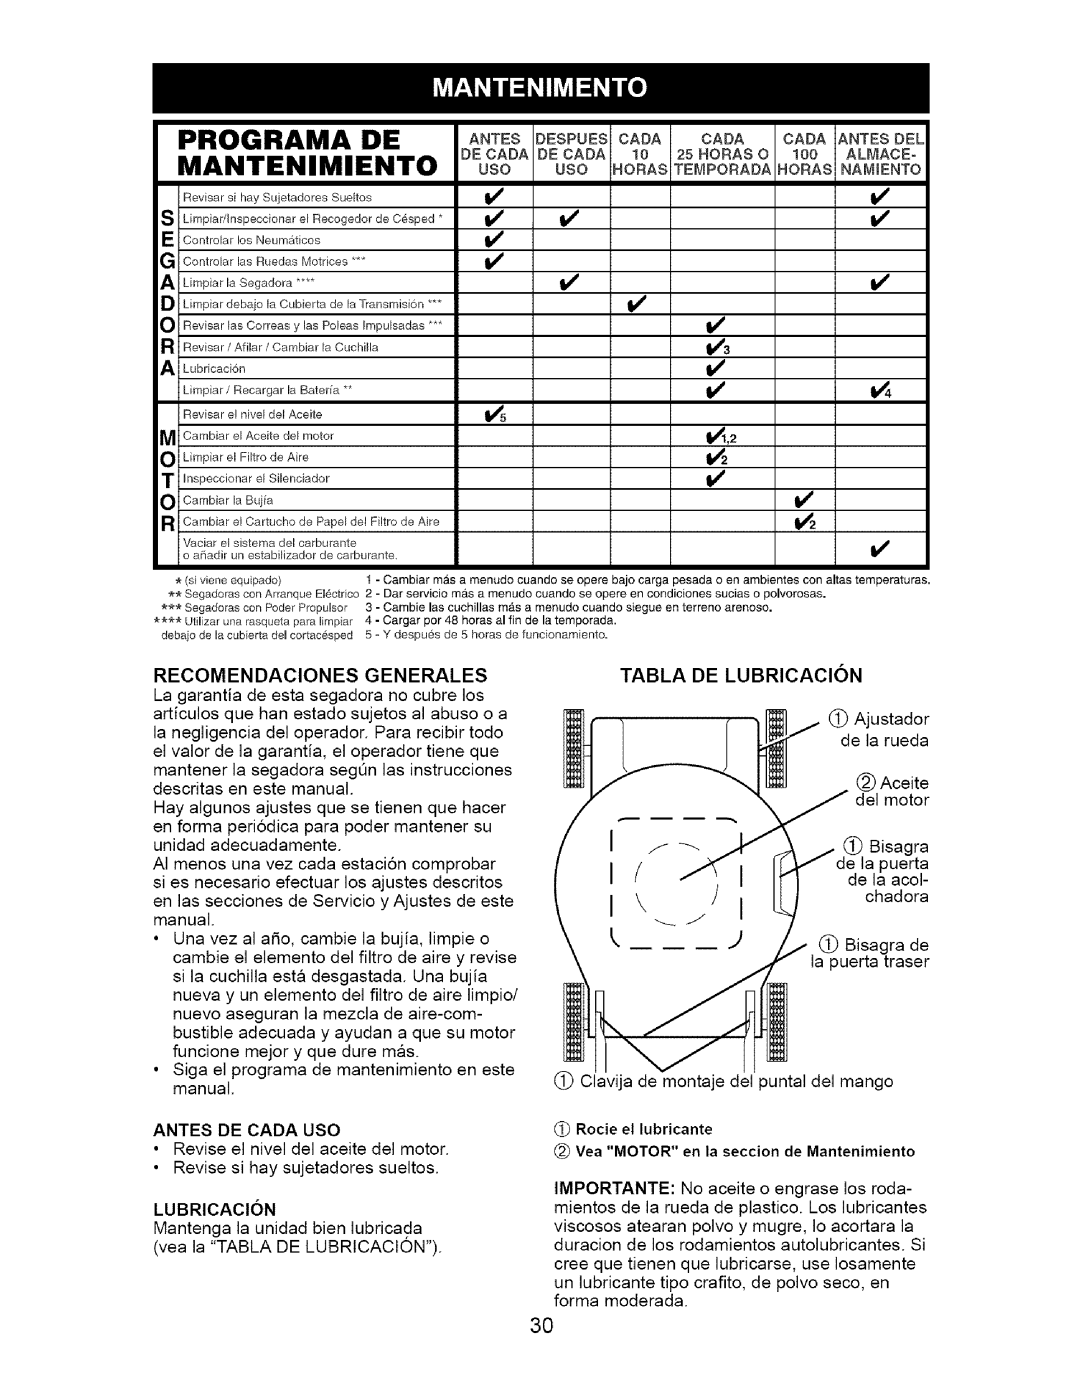 Craftsman 917.371721 owner manual MANTENIMIENTOuso uso .ORASTEMPORADA.ORAS.AMIENTO, Recomendaciones Generales, Lubricacion 